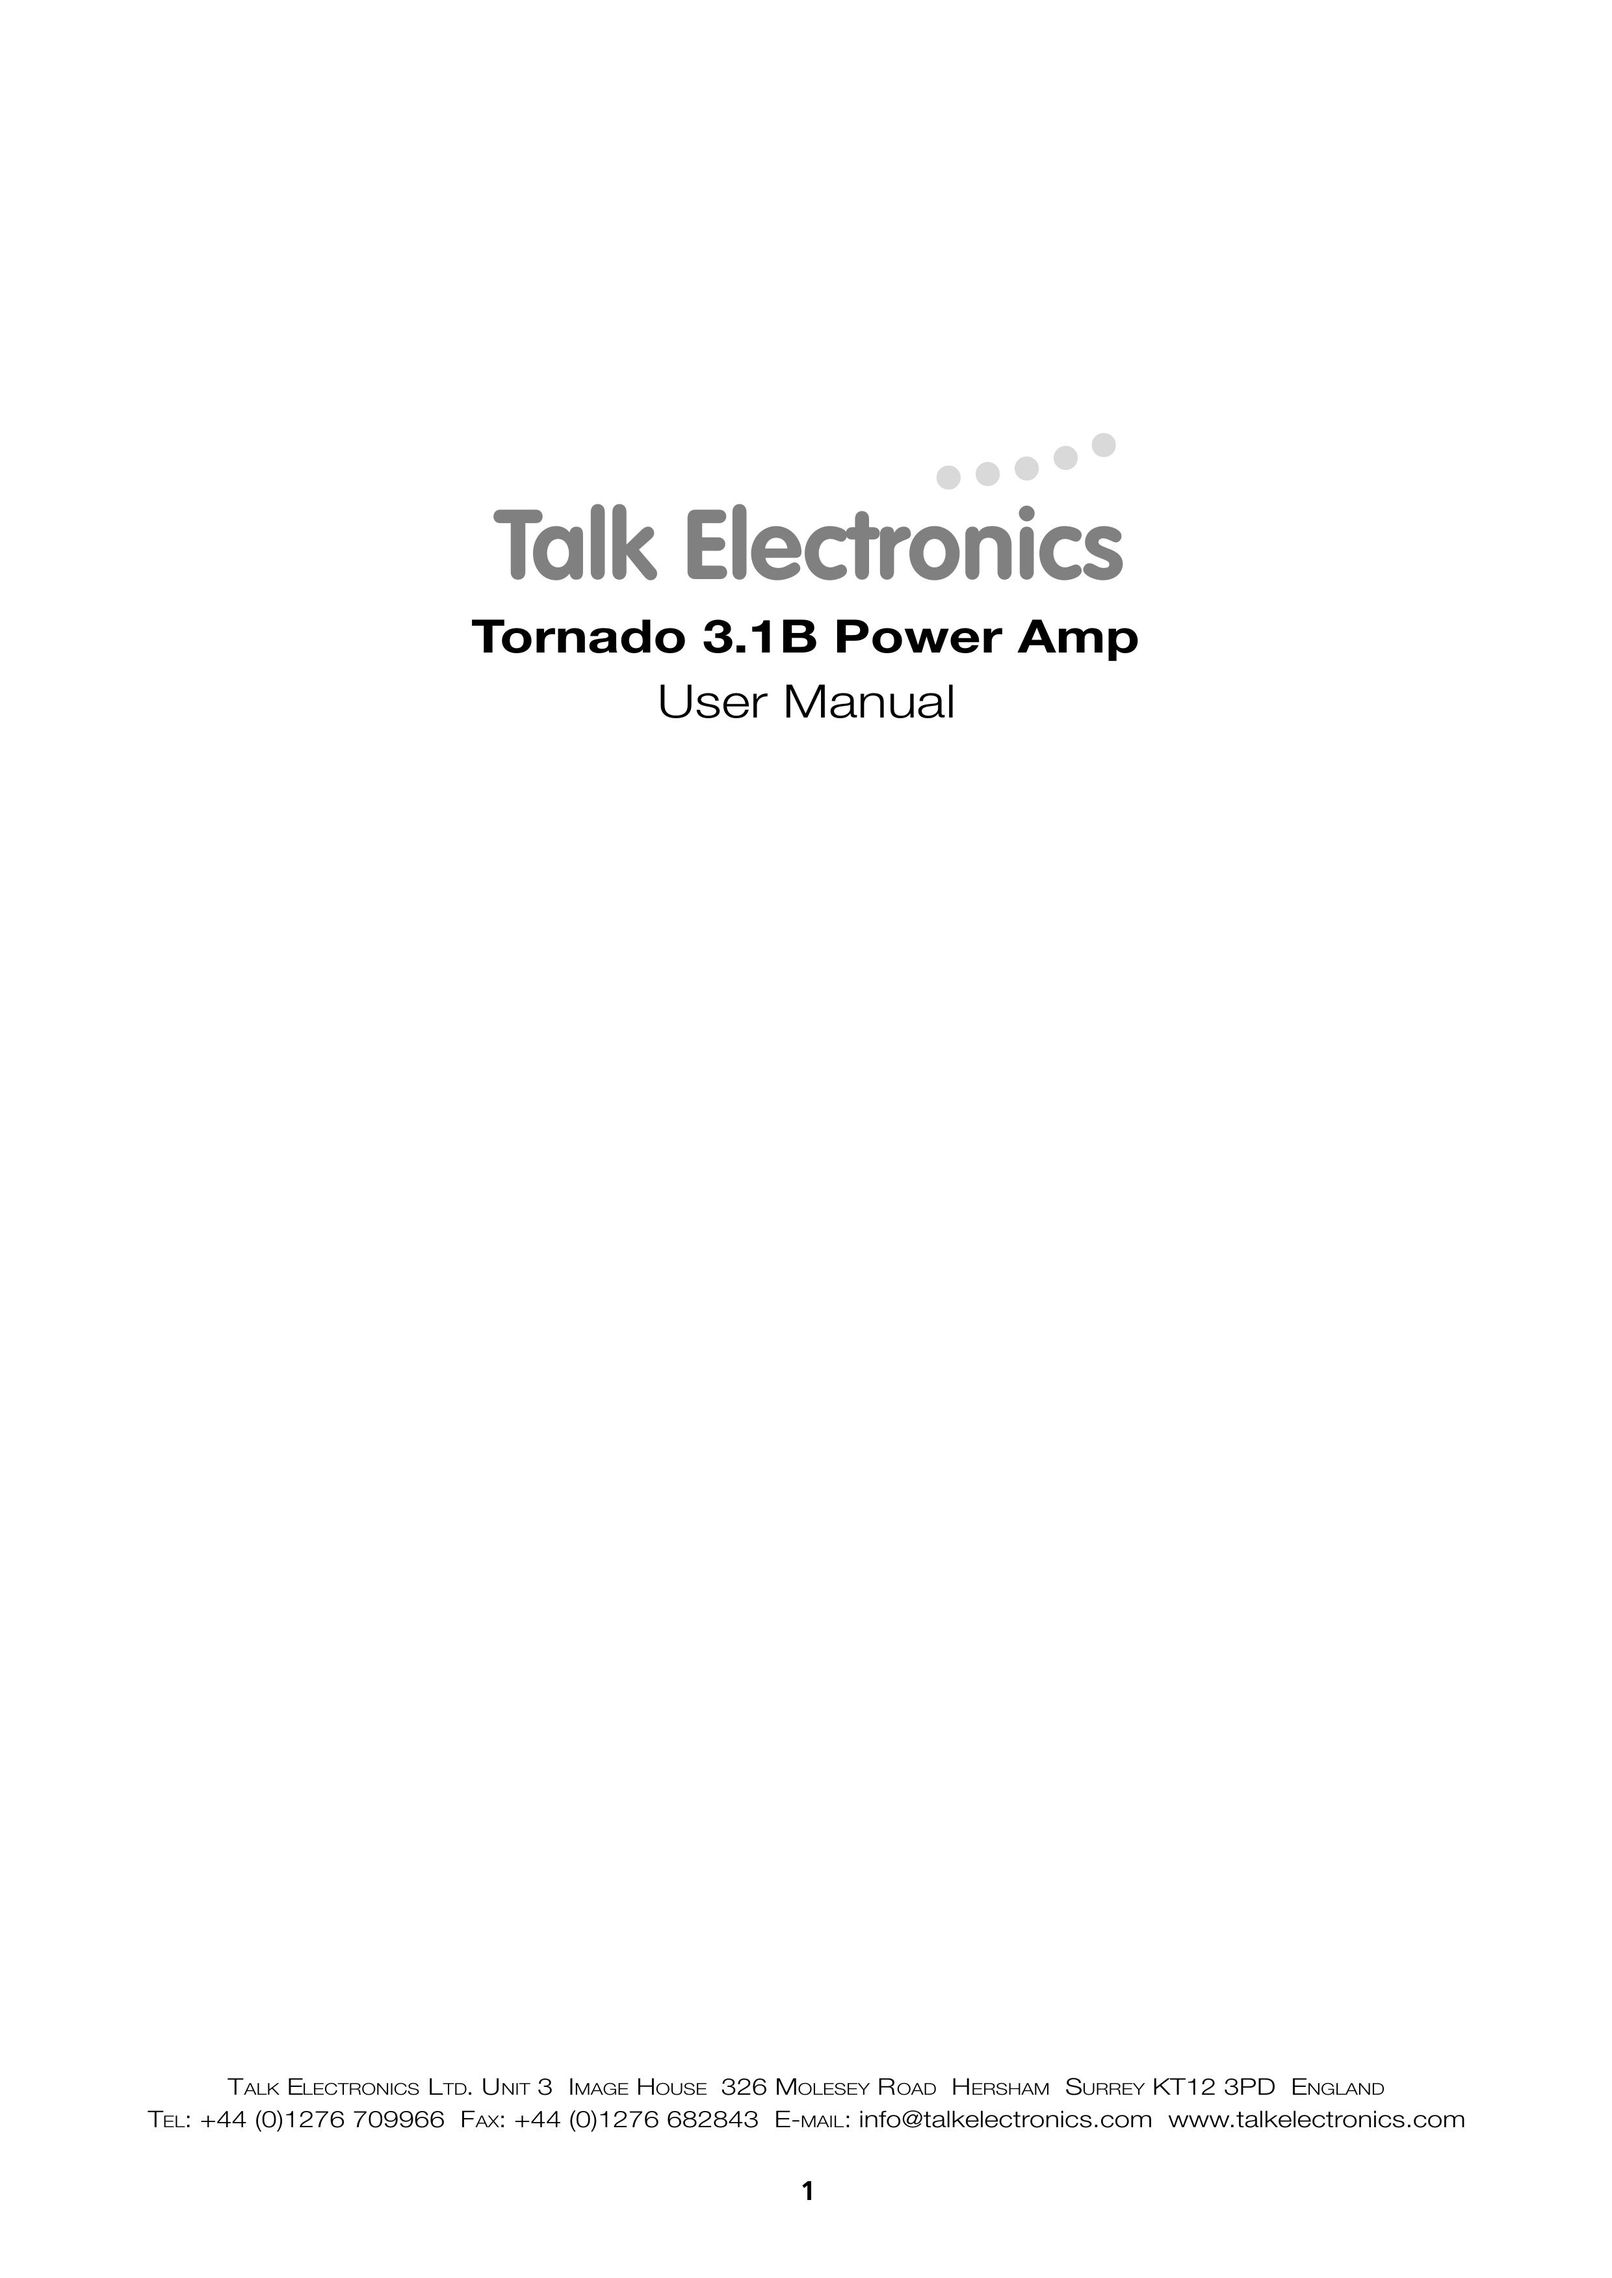 Talk electronic Tornado 3.1B Power Amplifier Stereo Amplifier User Manual